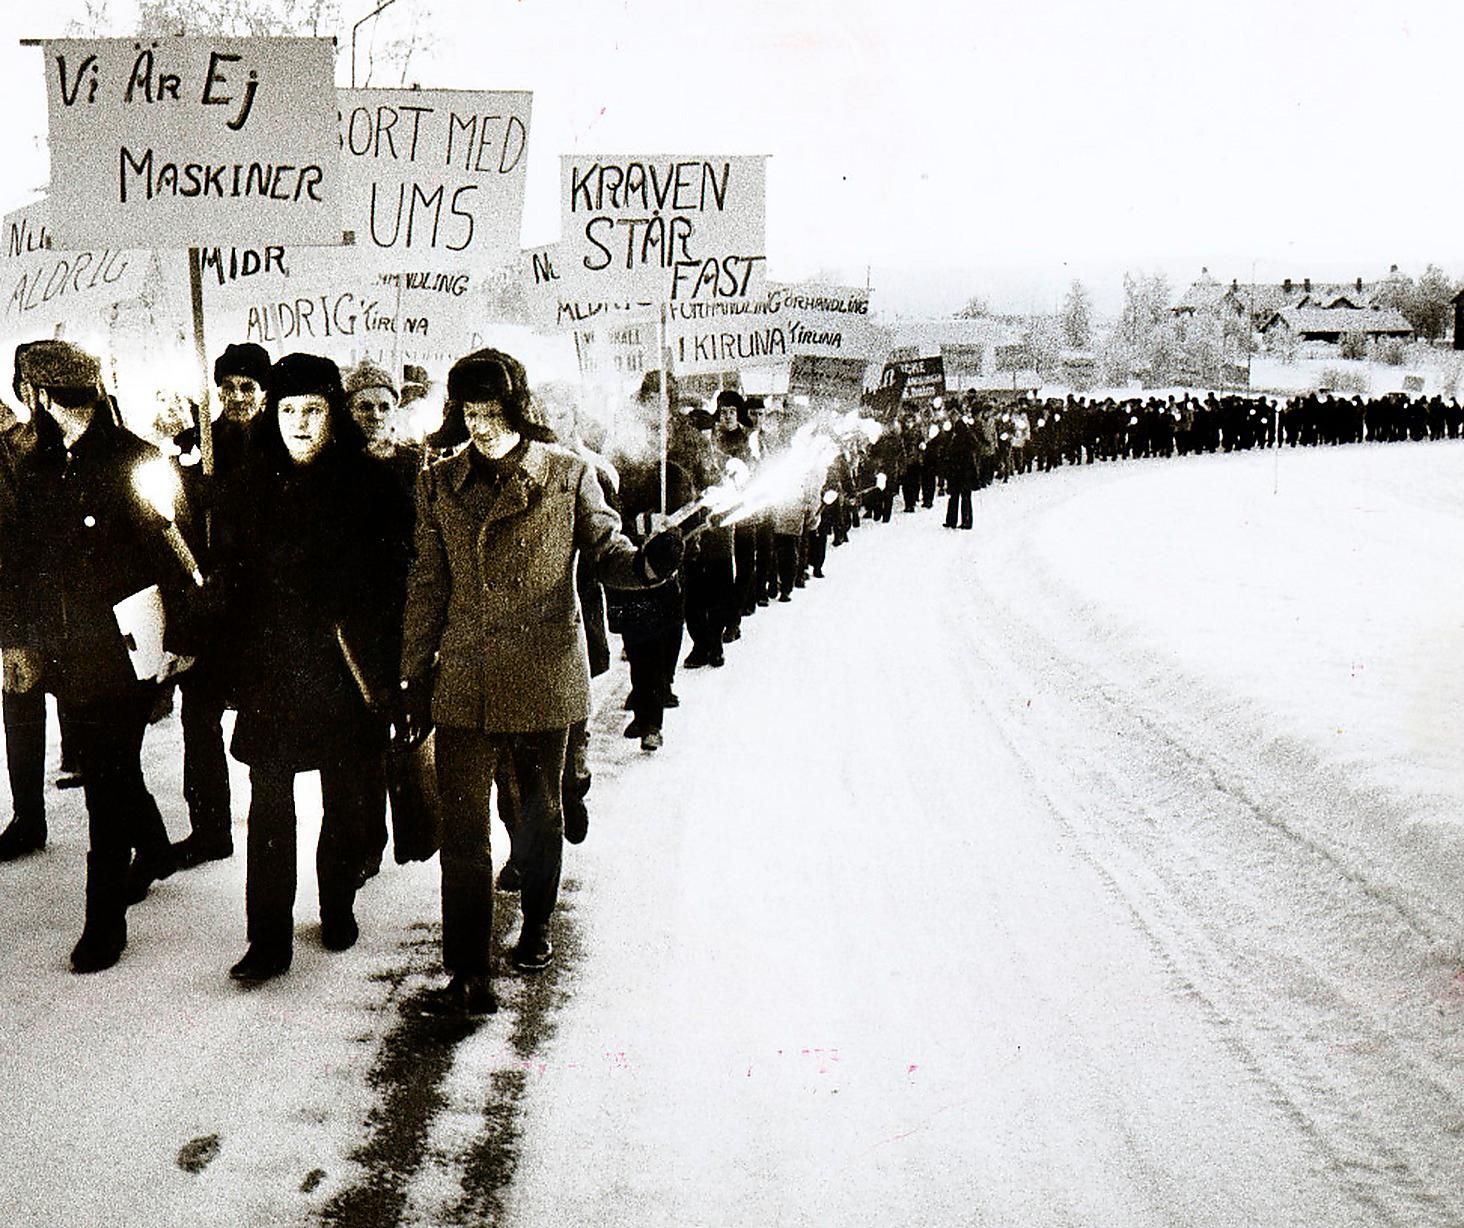 Gruvstrejk i Kiruna 1969. Arbetarrörelsens styrka skrämde en gång kapitalet och den politiska liberalismen till samförstånd, menar Göran Greider: ”Kapitalet måste skrämmas en gång till!”.